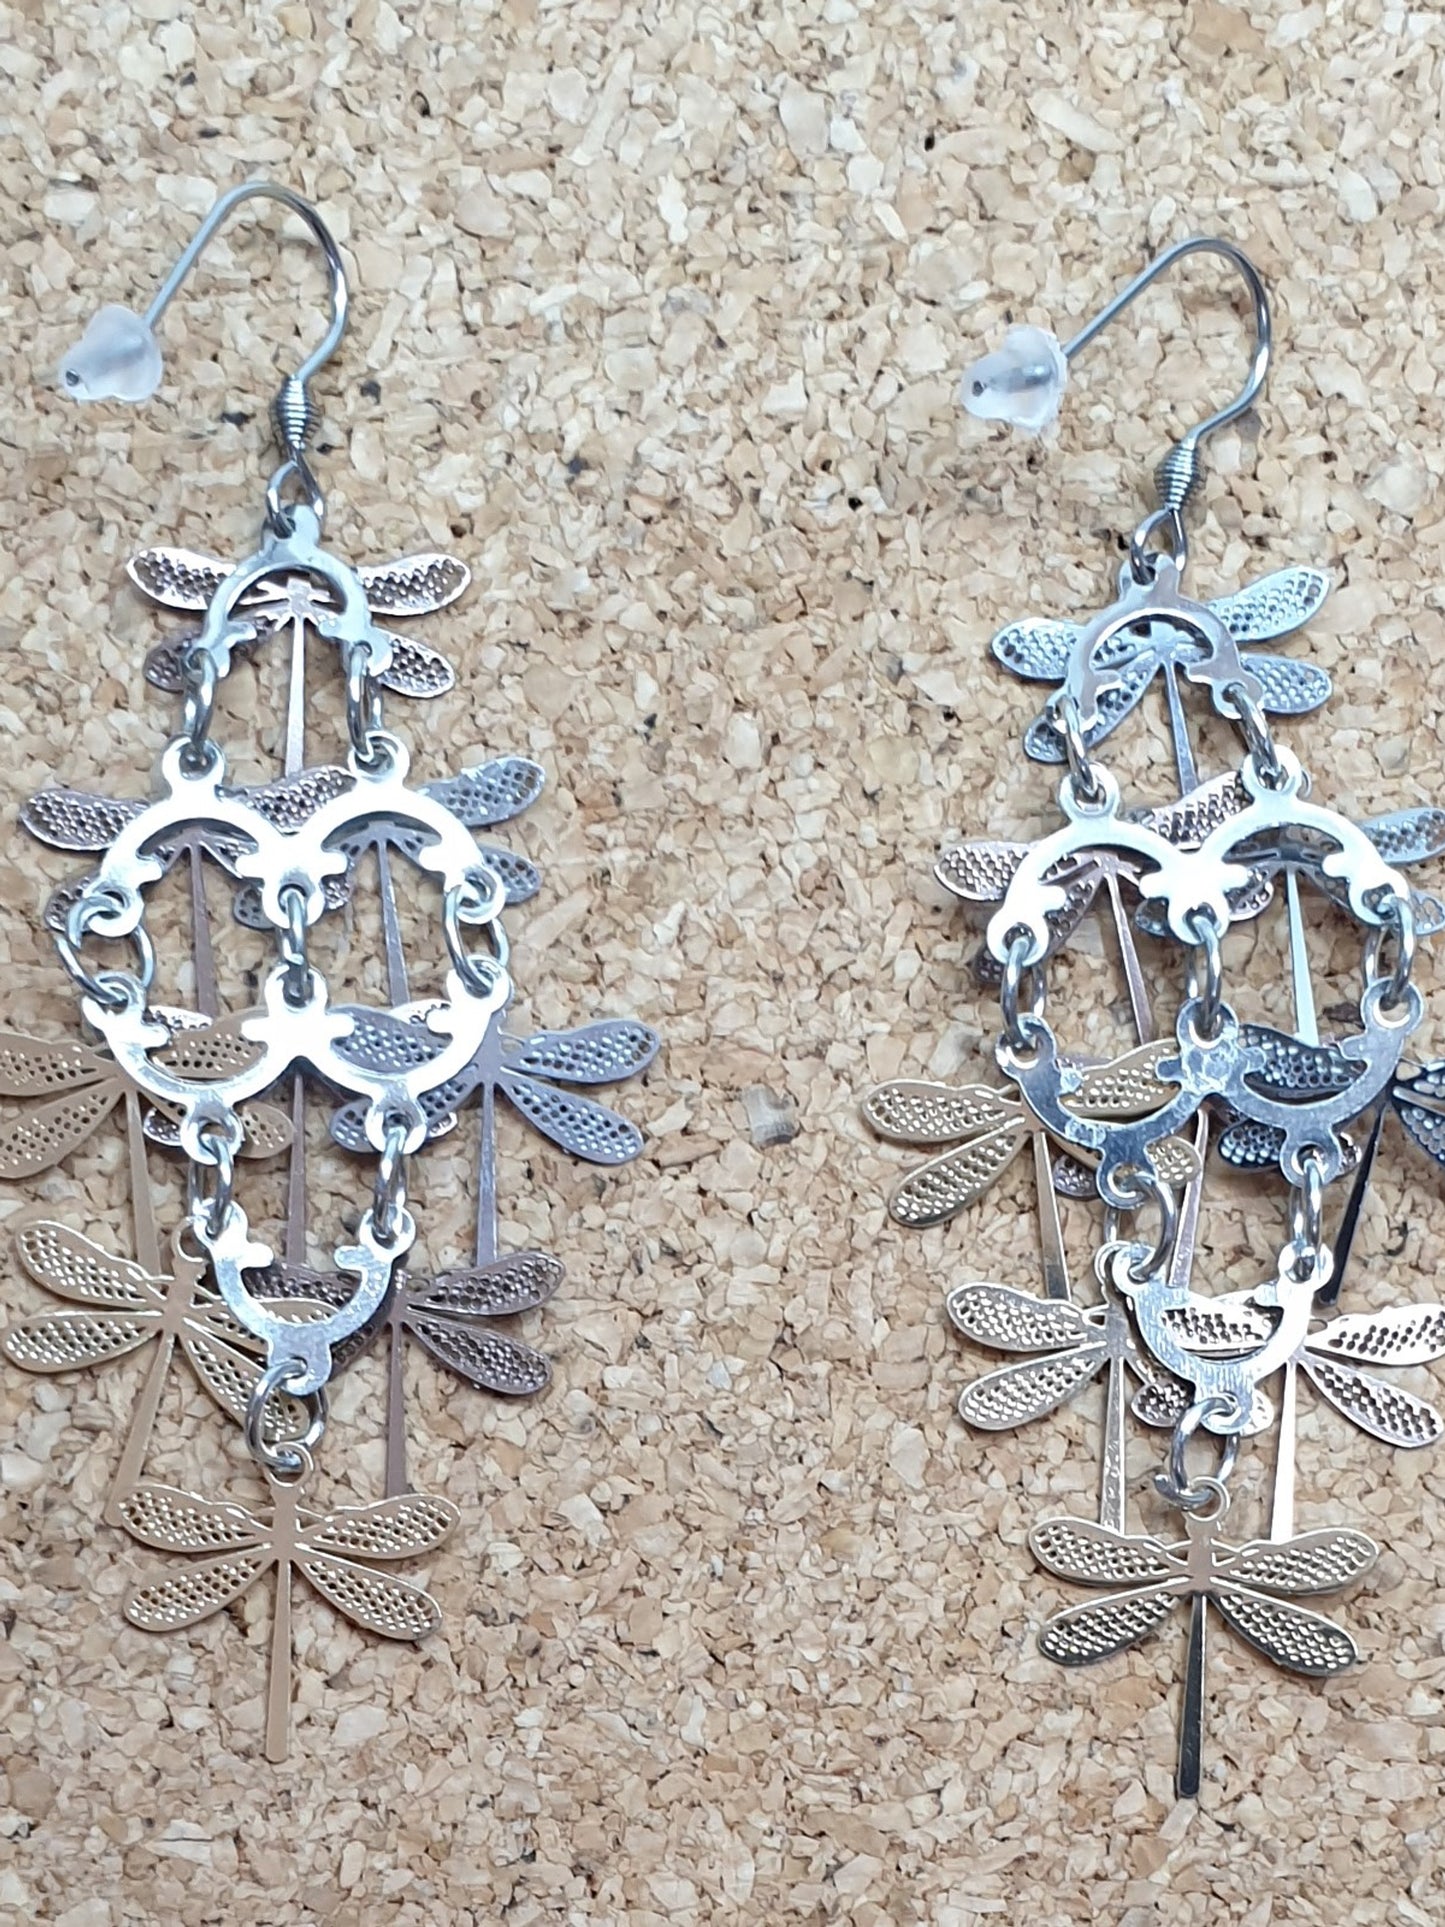 Silver & Golden Dragonflies dangle earrings